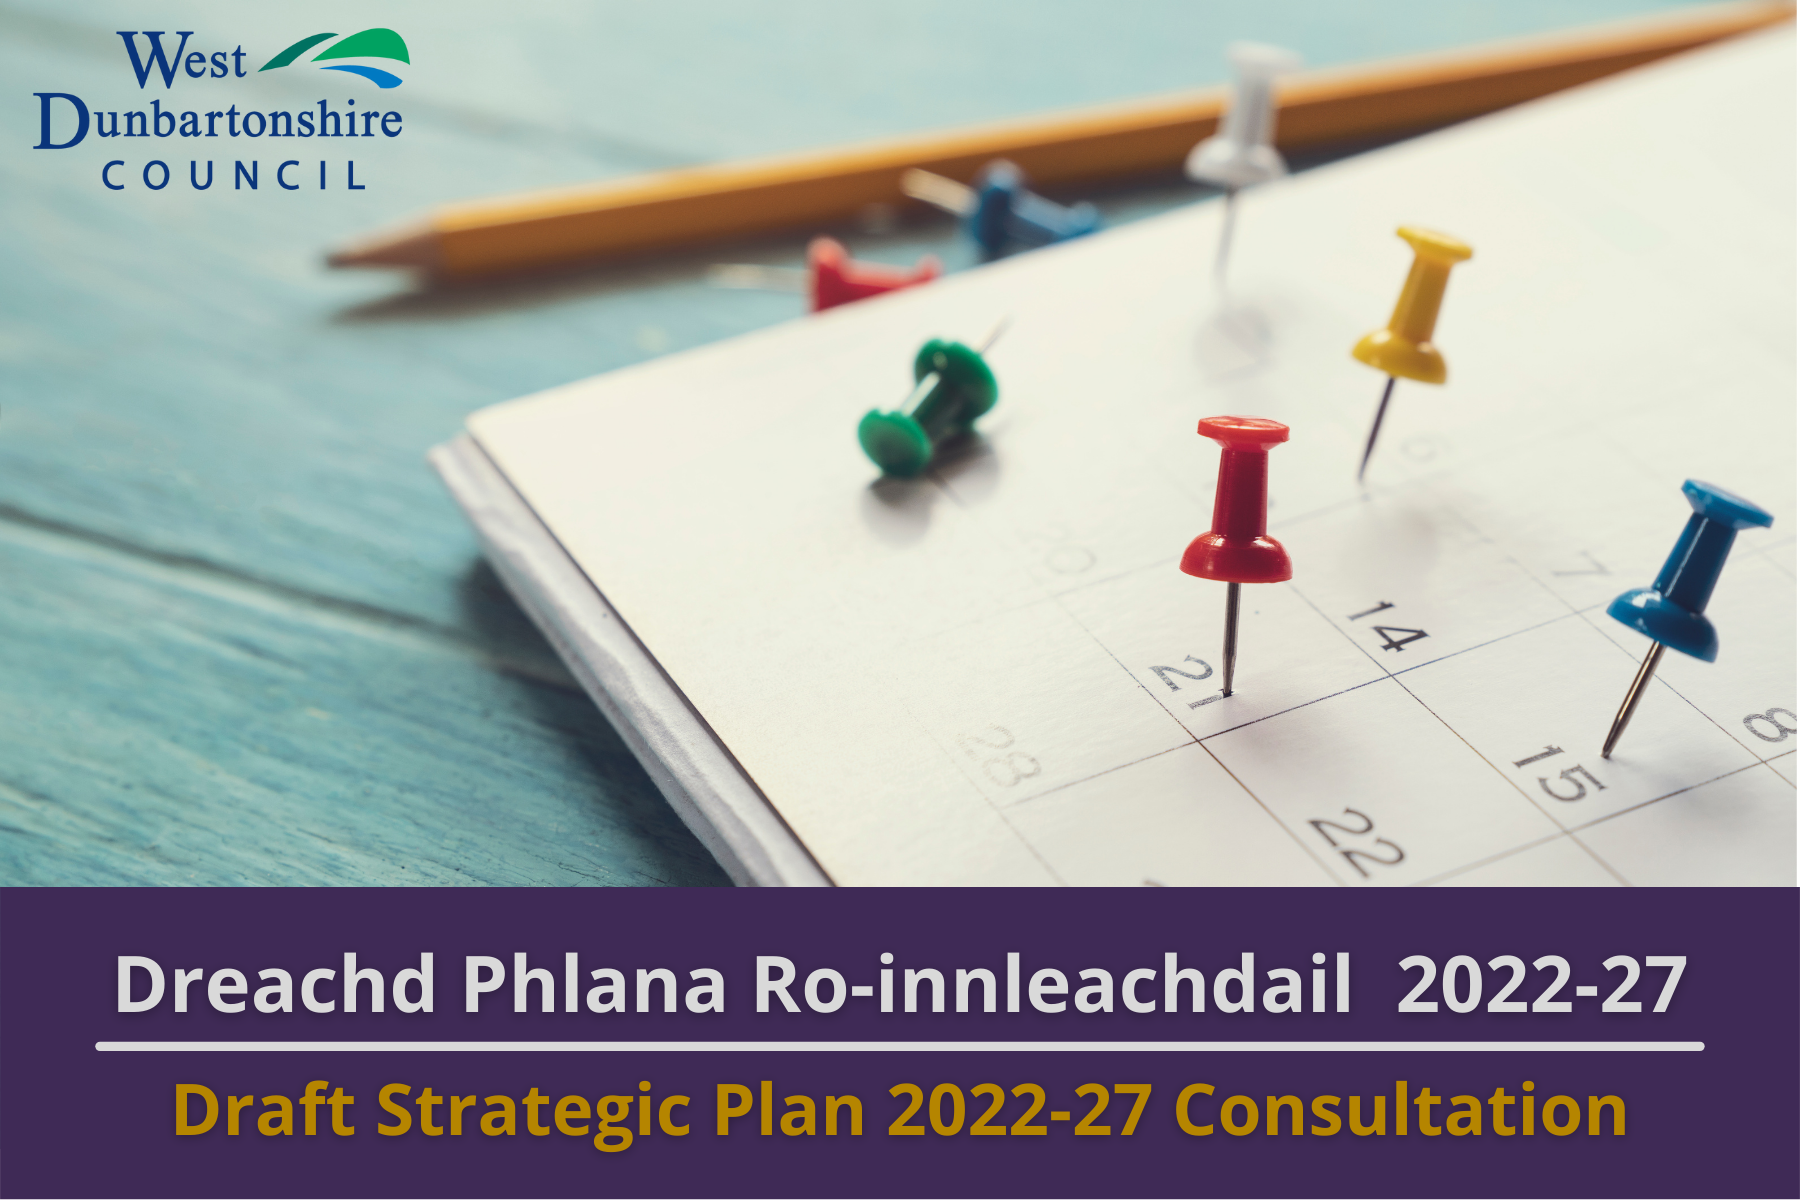 Co-chomhairle air Dreachd Phlana Ro-innleachdail 2022-27 Comhairle Siorrachd Dhùn Breatainn an Iar